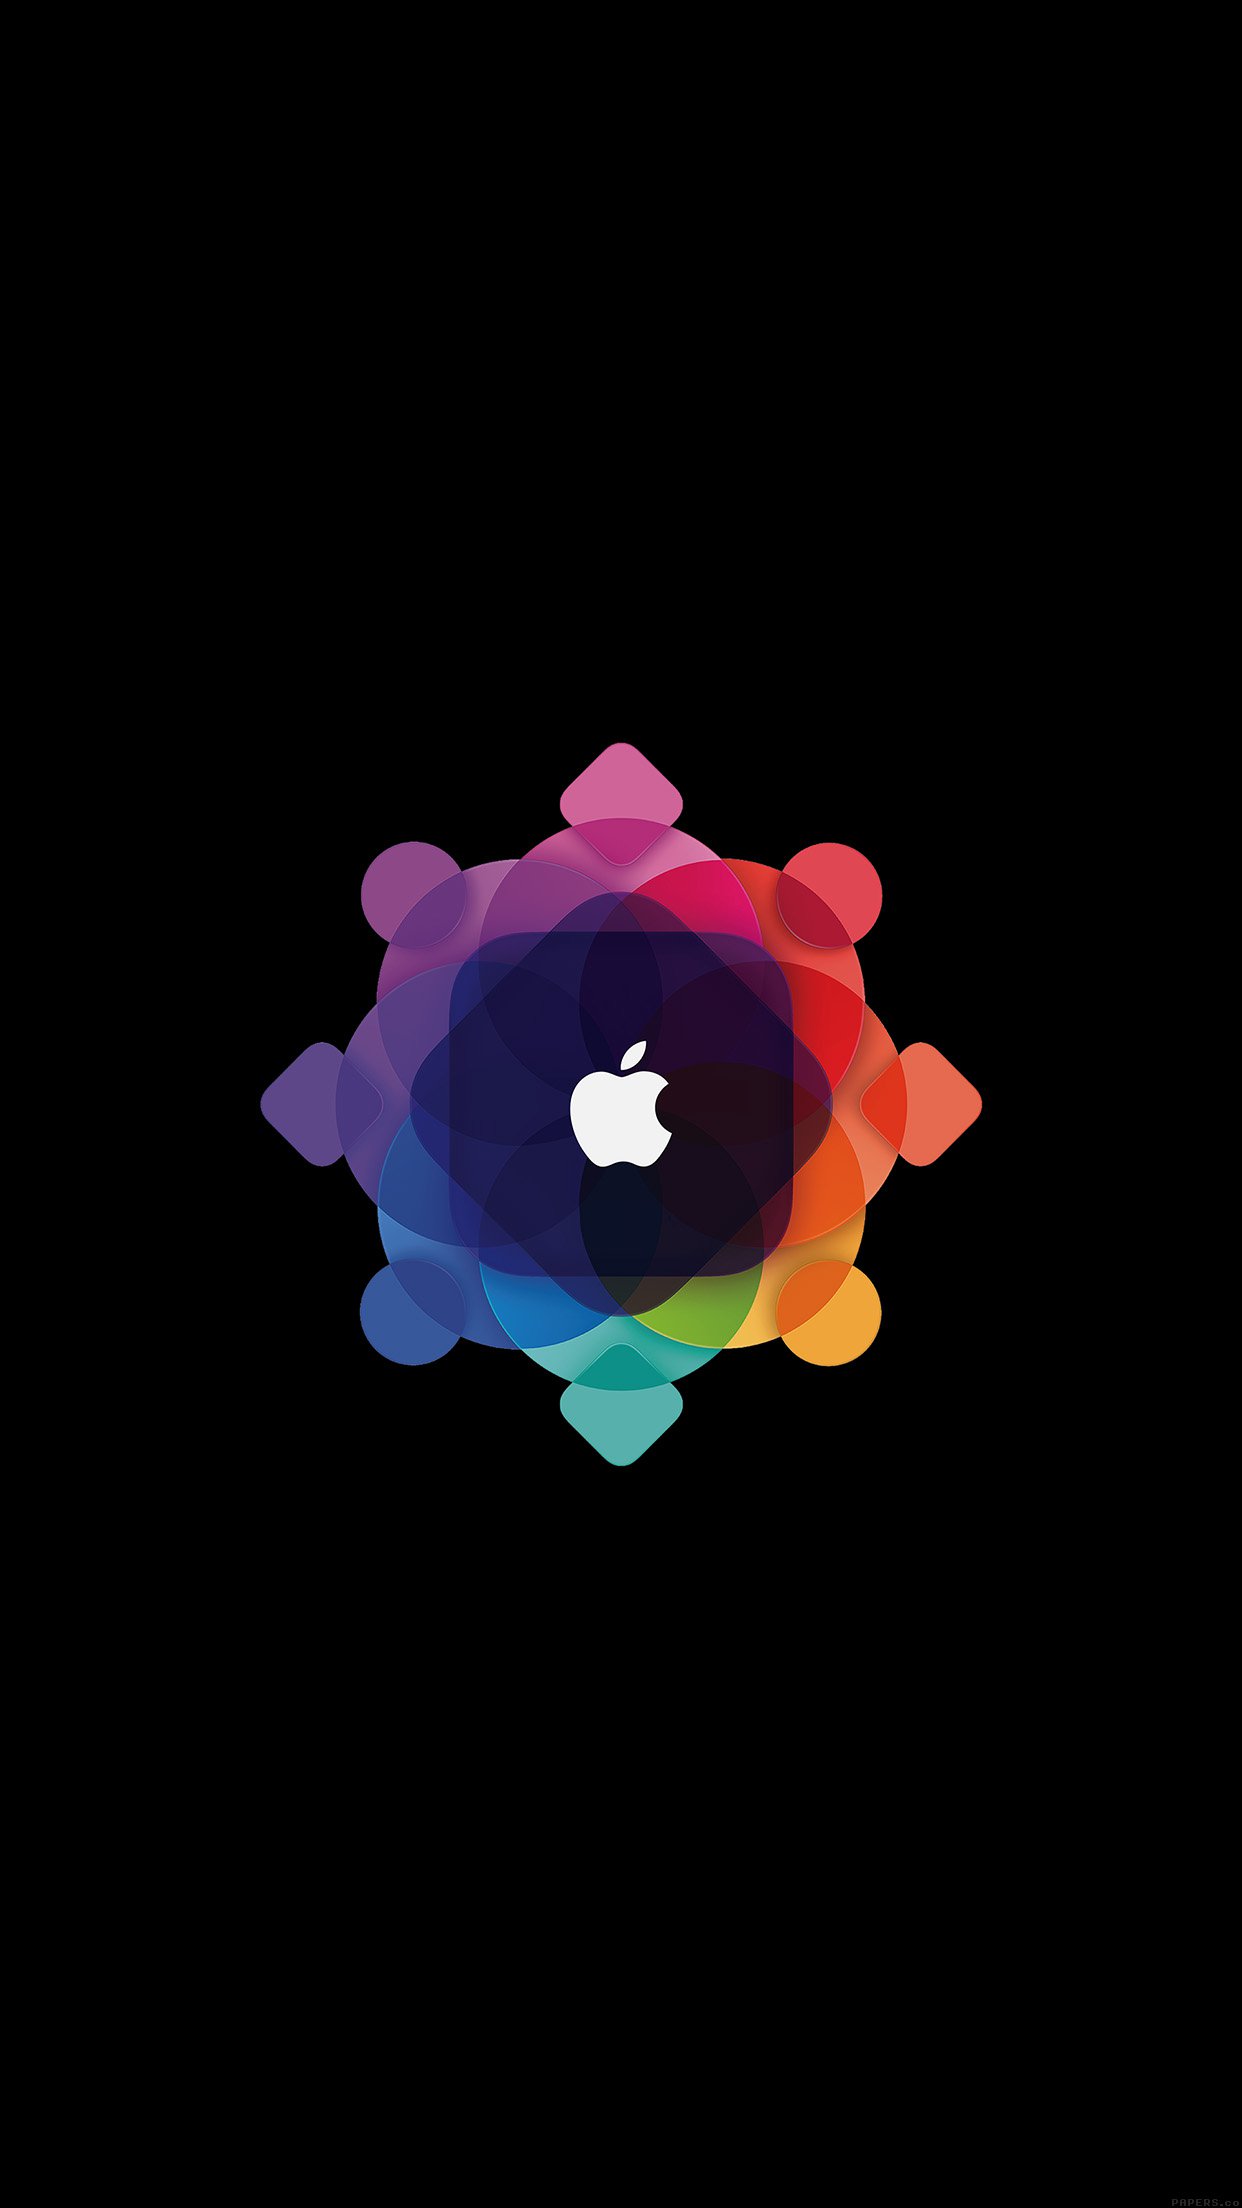 Apple Wwdc Art Logo Minimal Dark Android wallpaper